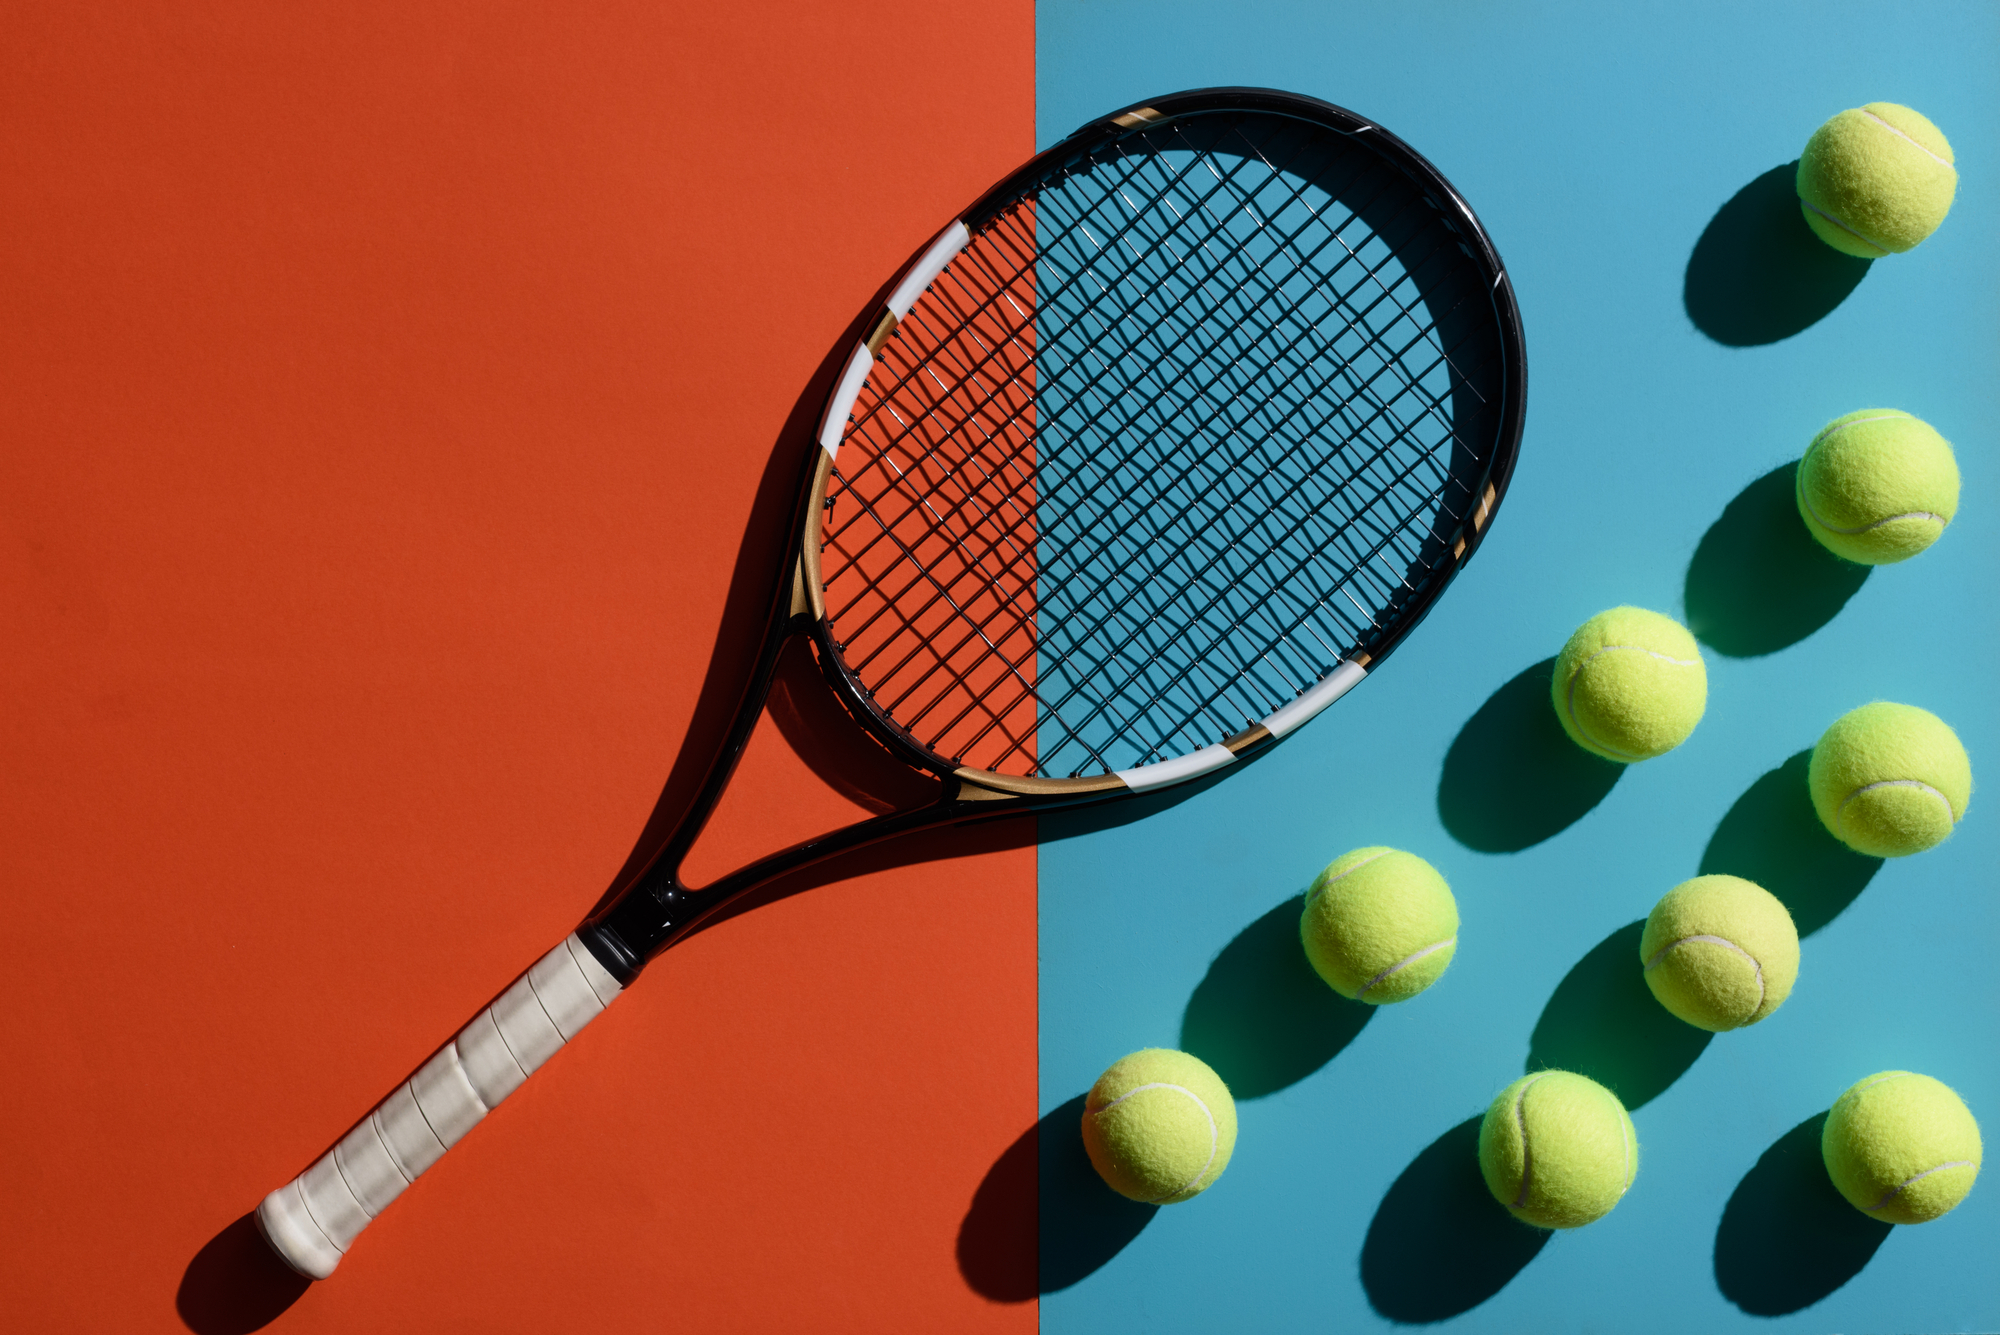 ATP – mužská tenisová asociace slavící 50 let